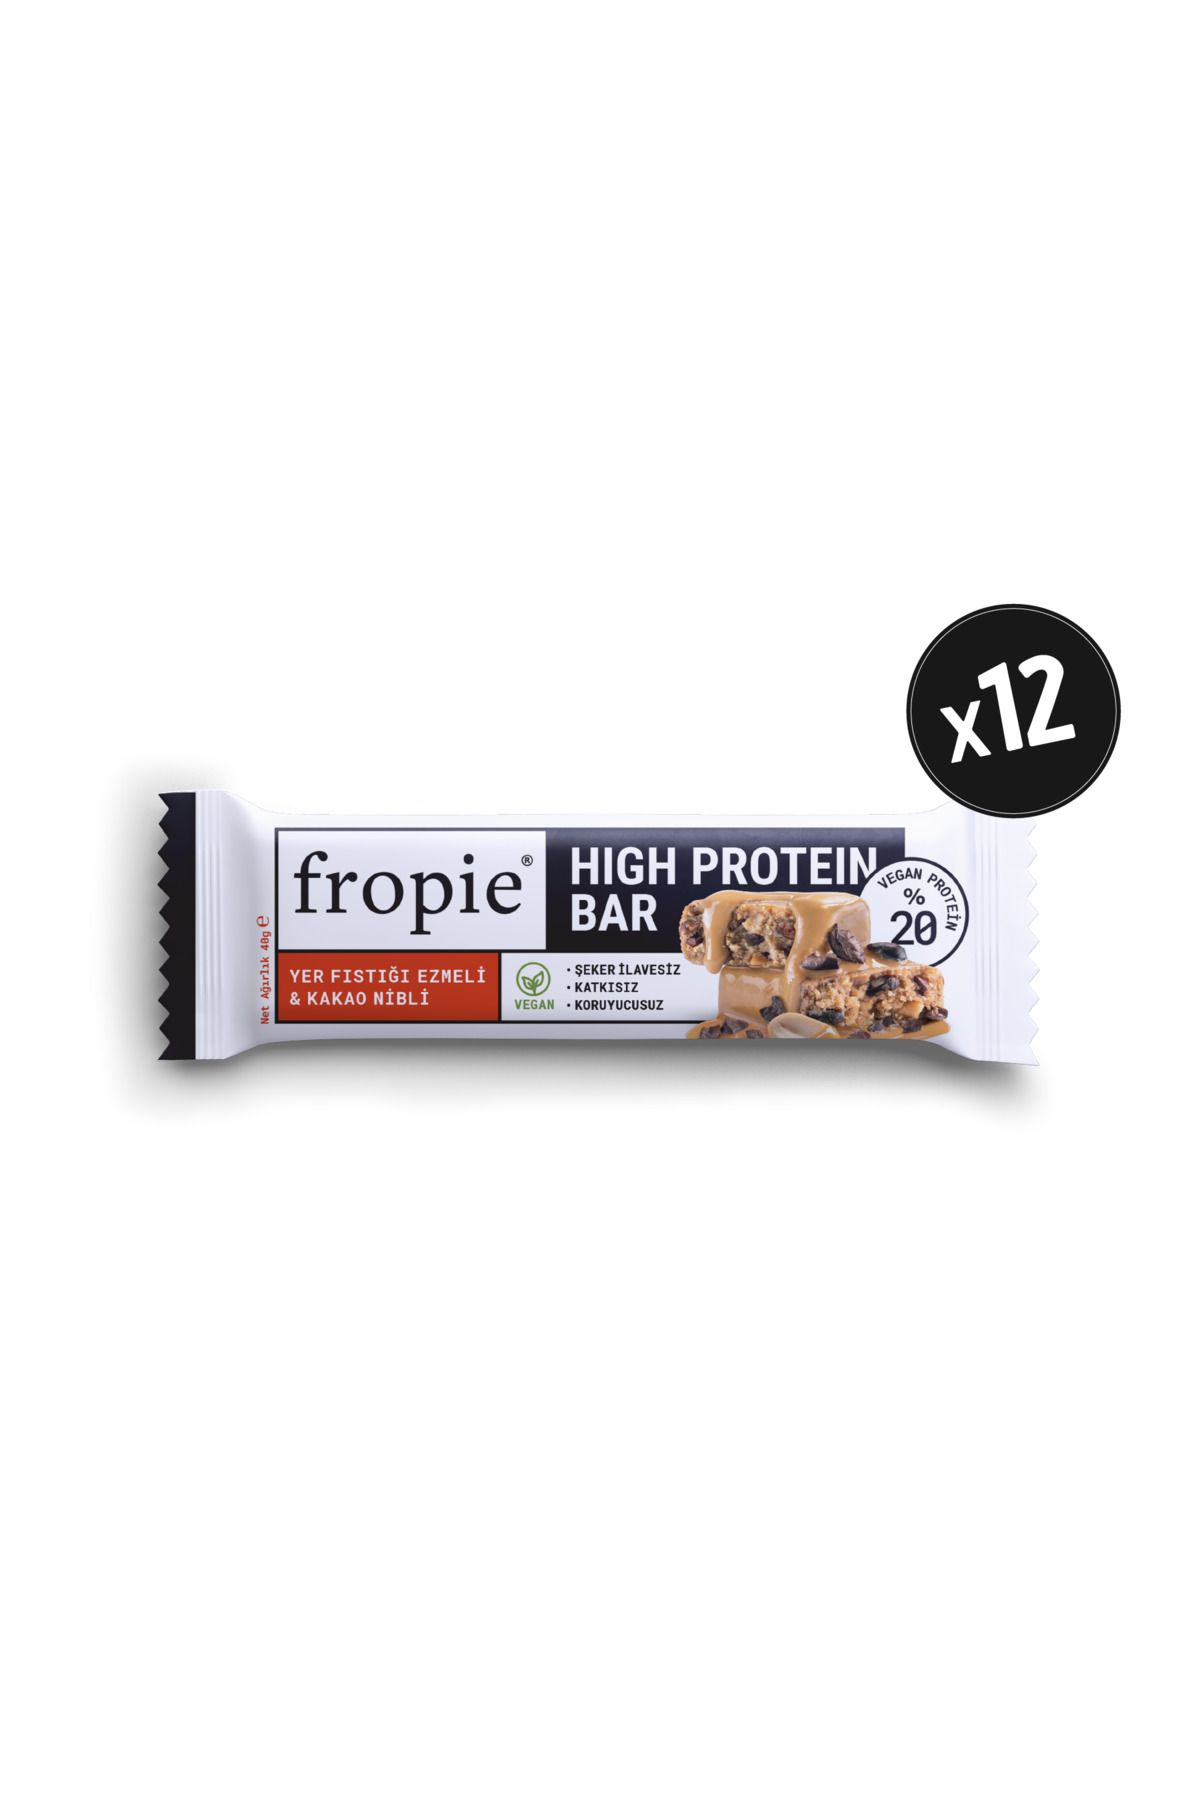 FROPİE Vegan High Protein Bar - Yer Fıstığı Ezmeli & Kakao Nibli 40gr x12